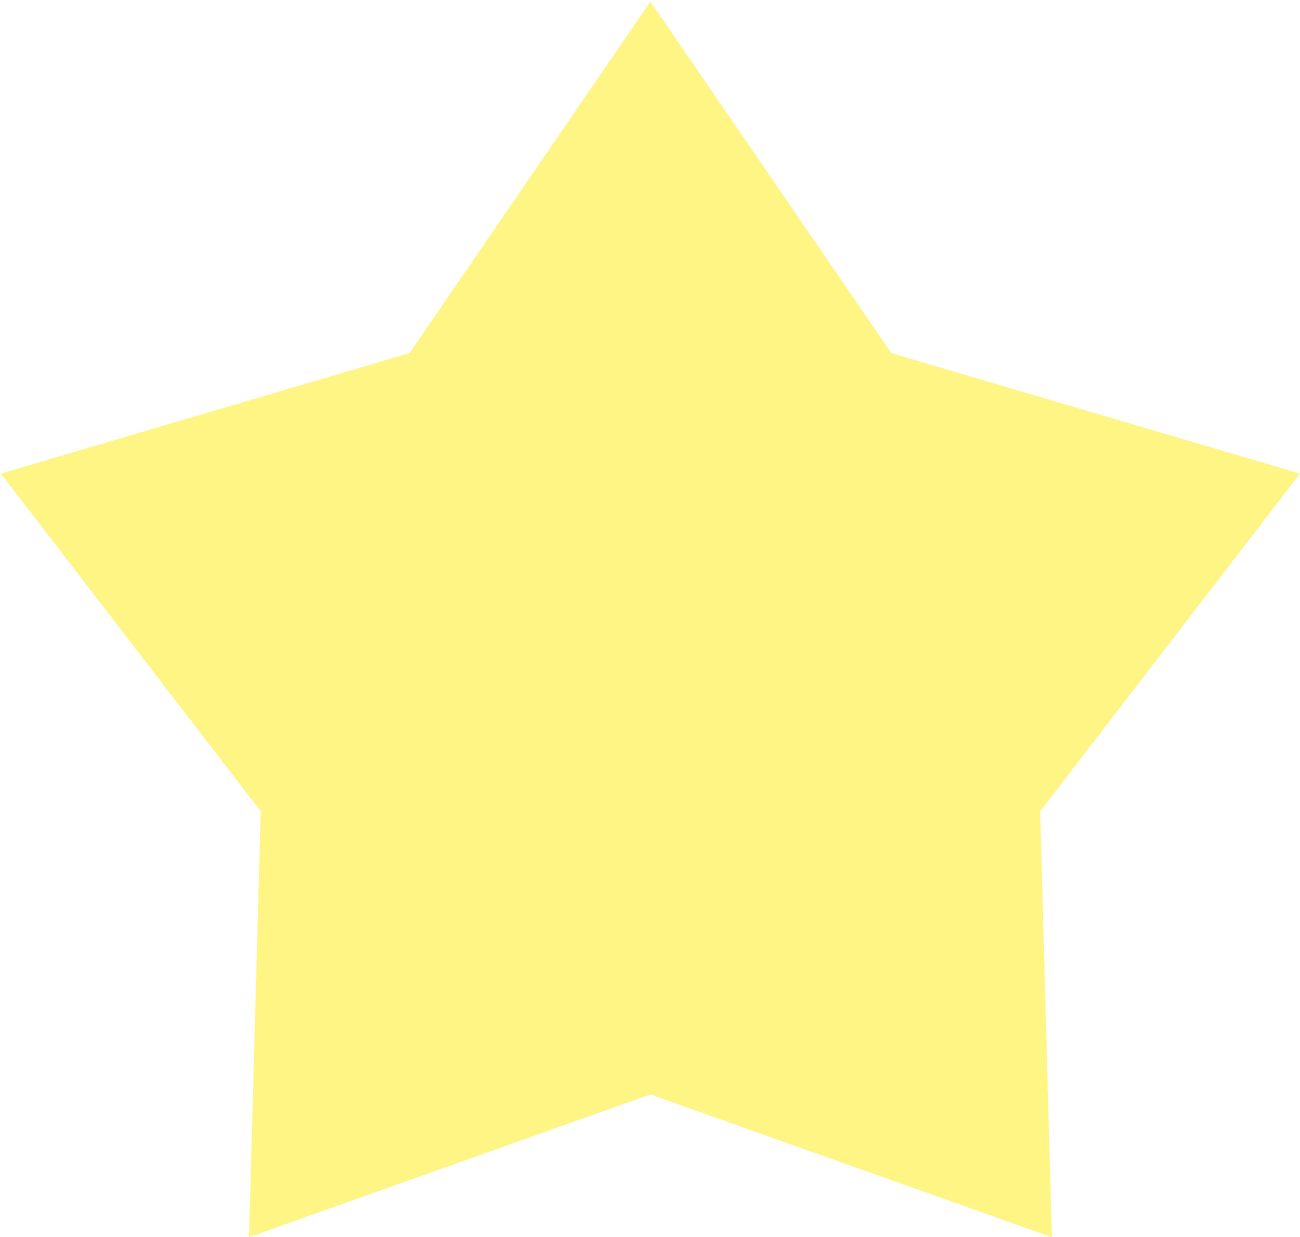 Yellow Star Shape - Talent Show Star (1449x1449)